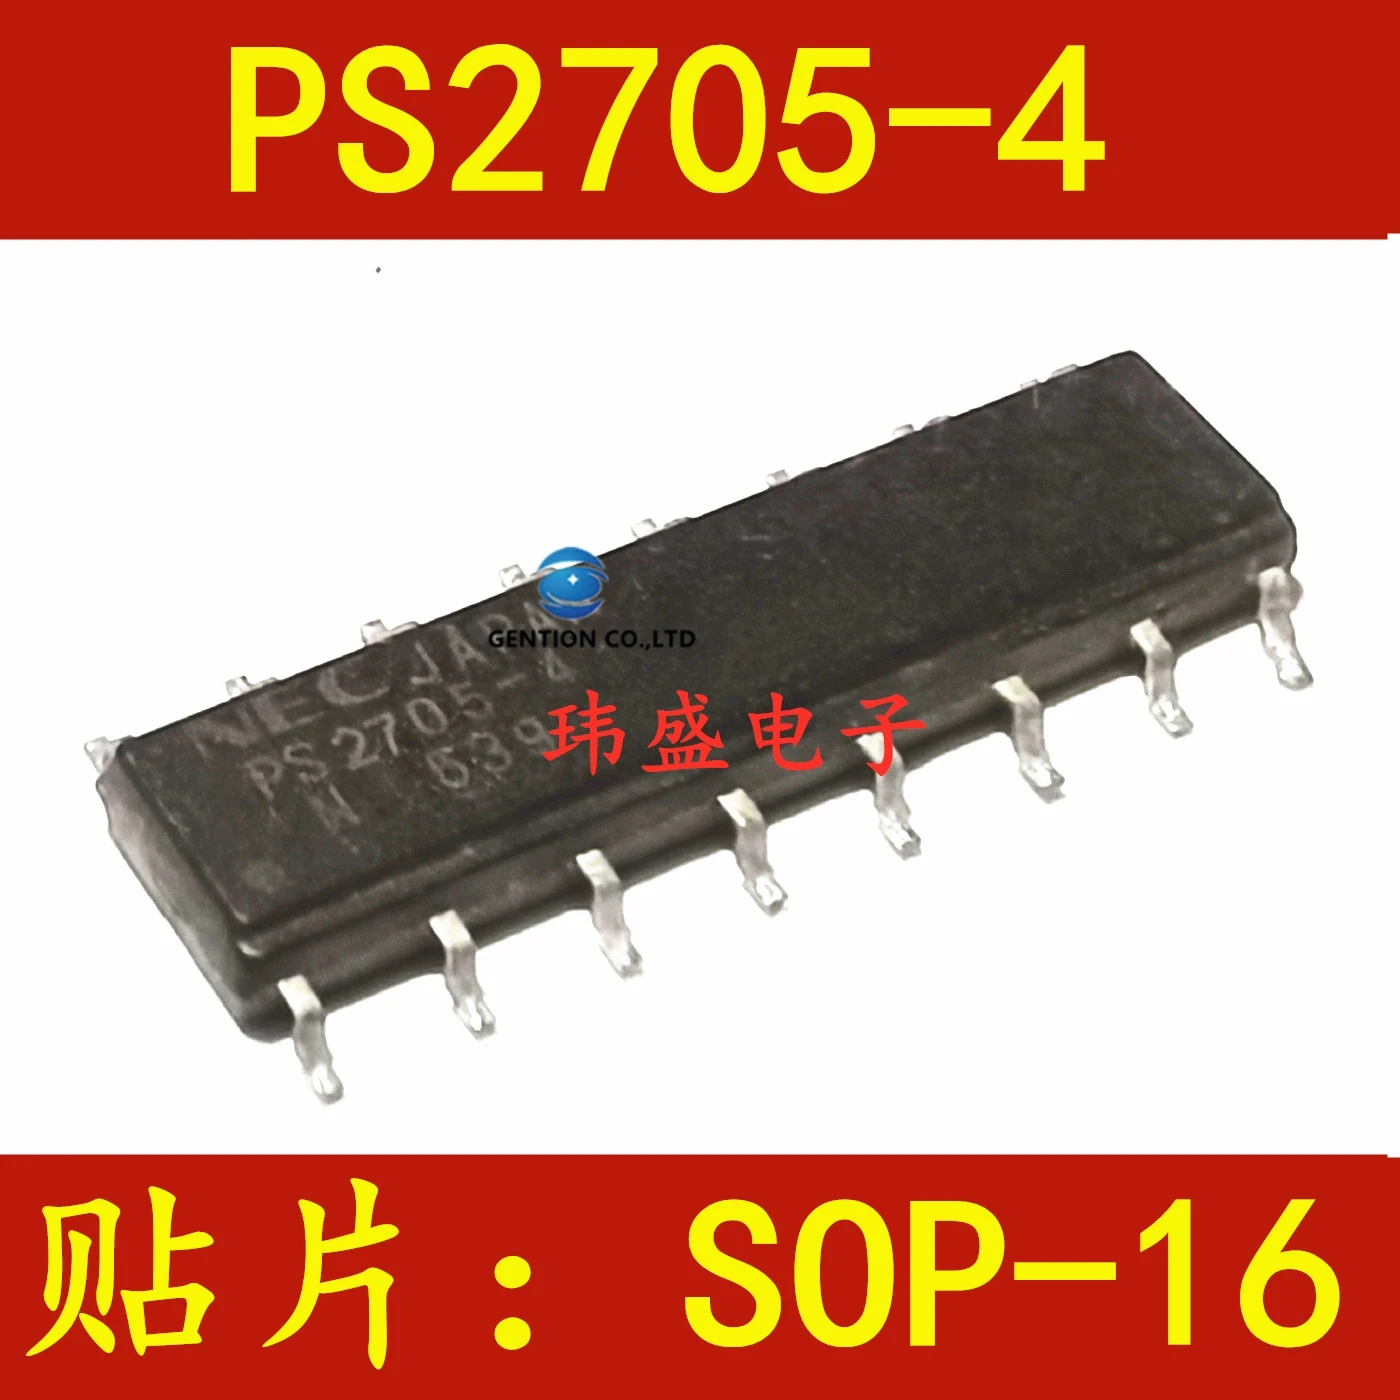 

10 шт. PS2705 PS2705-4 SOP16 оптический изолятор в наличии 100% новый и оригинальный